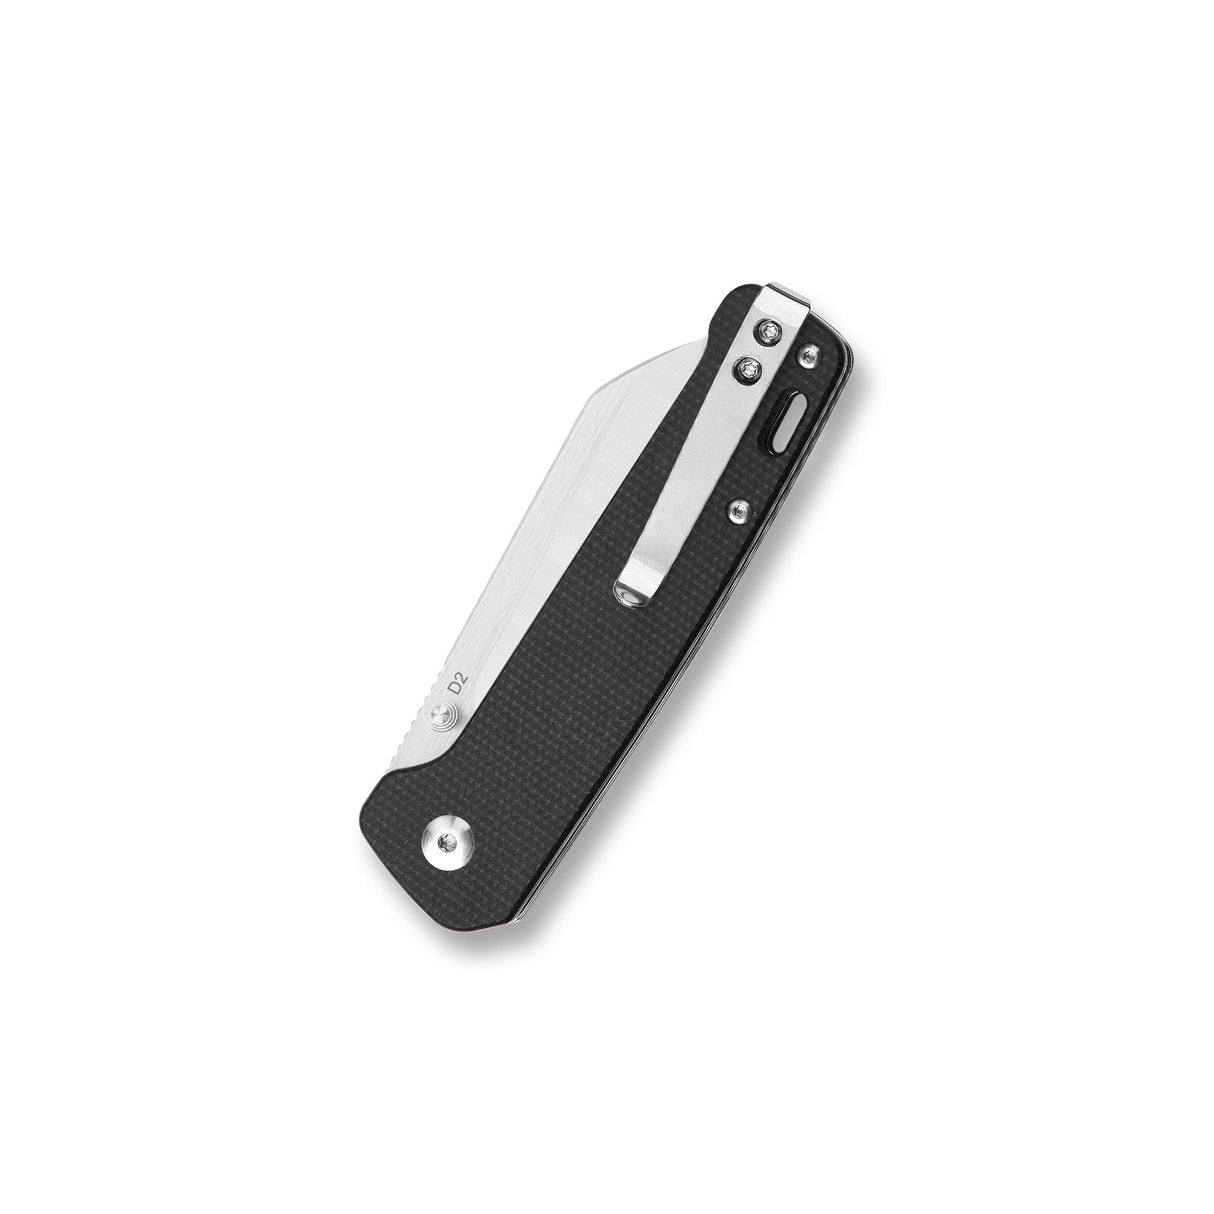 QSP Penguin Liner Lock Pocket Knife D2 blade Micarta handle